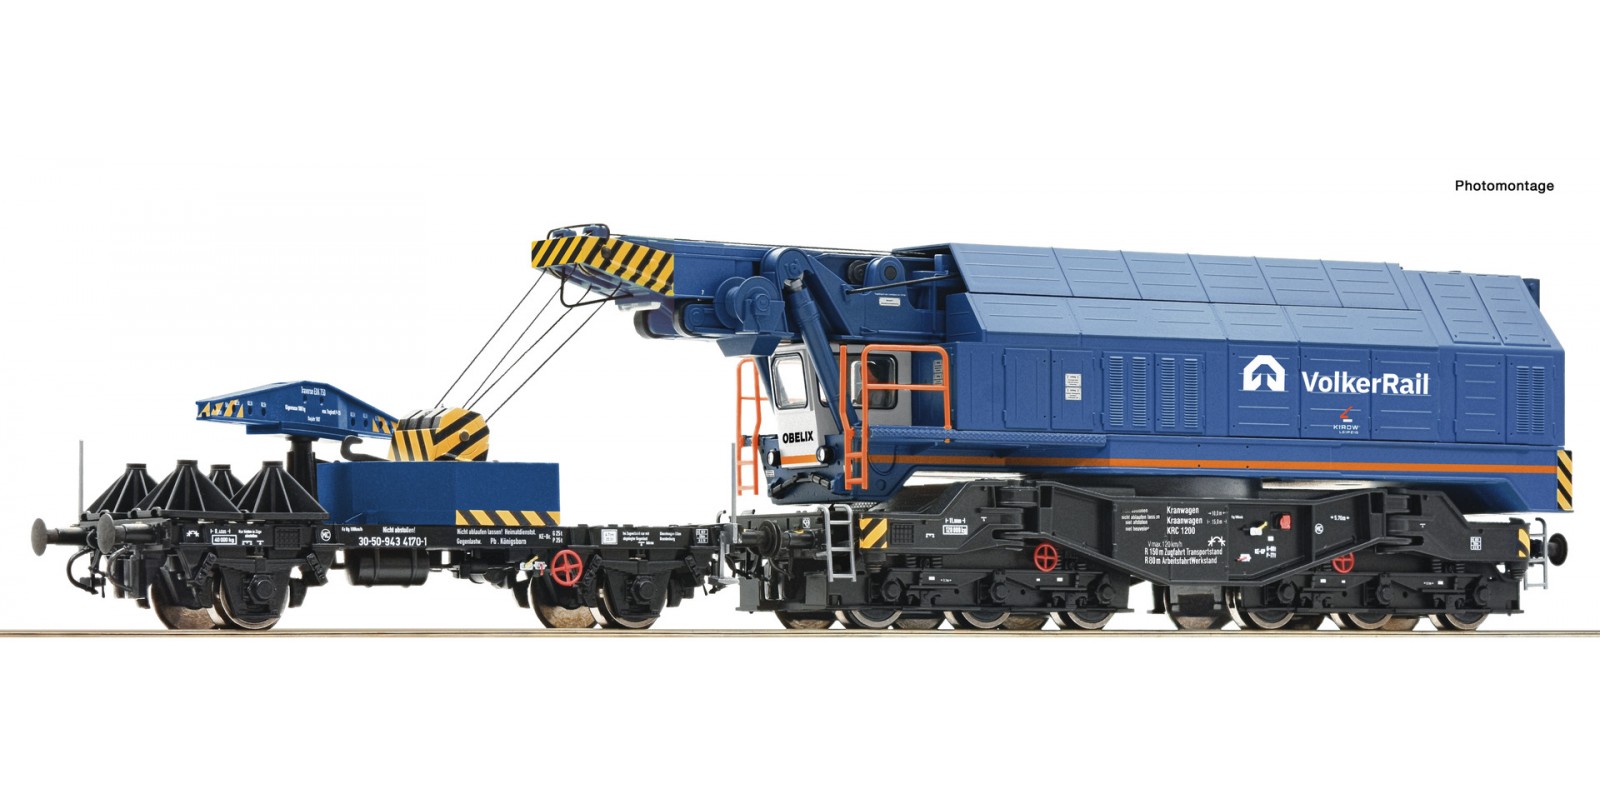 RO7310023 Digital railway slewing crane, Volkerrail